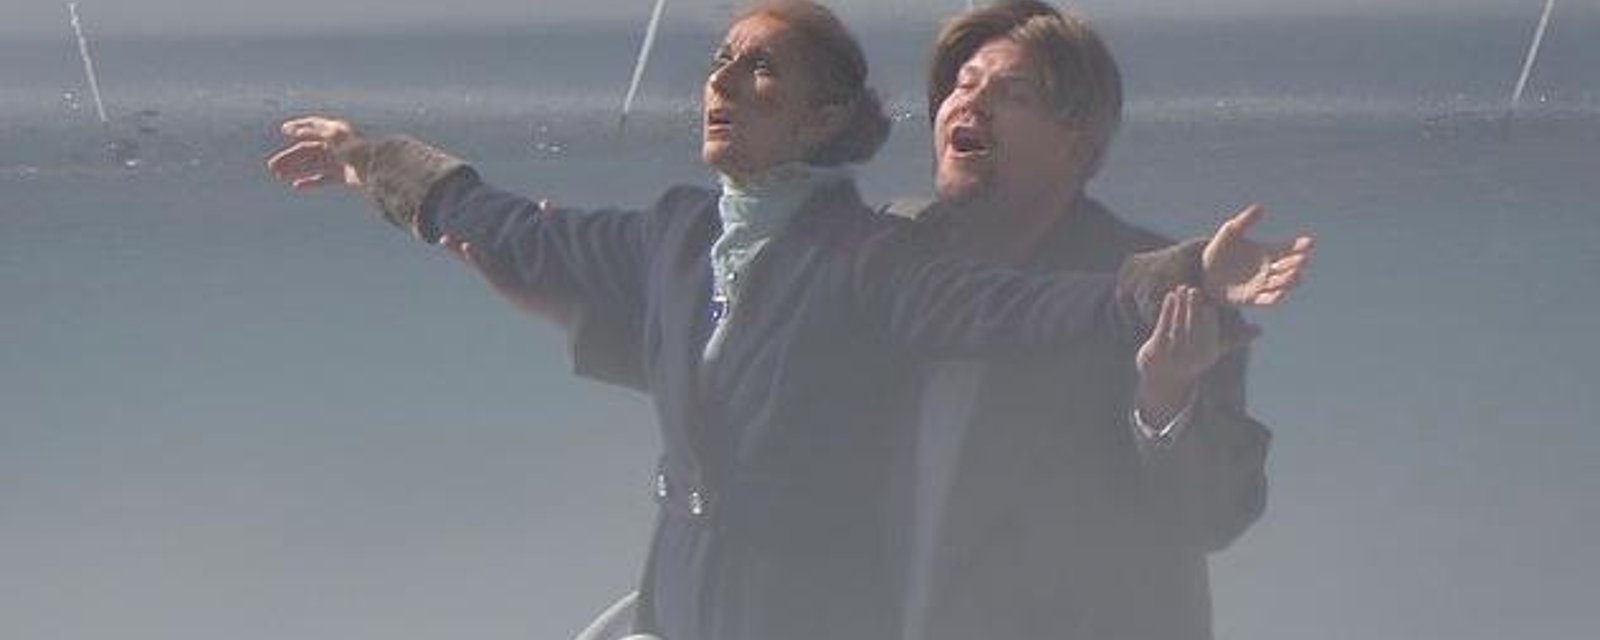 Céline Dion recrée la légendaire scène du Titanic avec l'animateur britannique James Corden